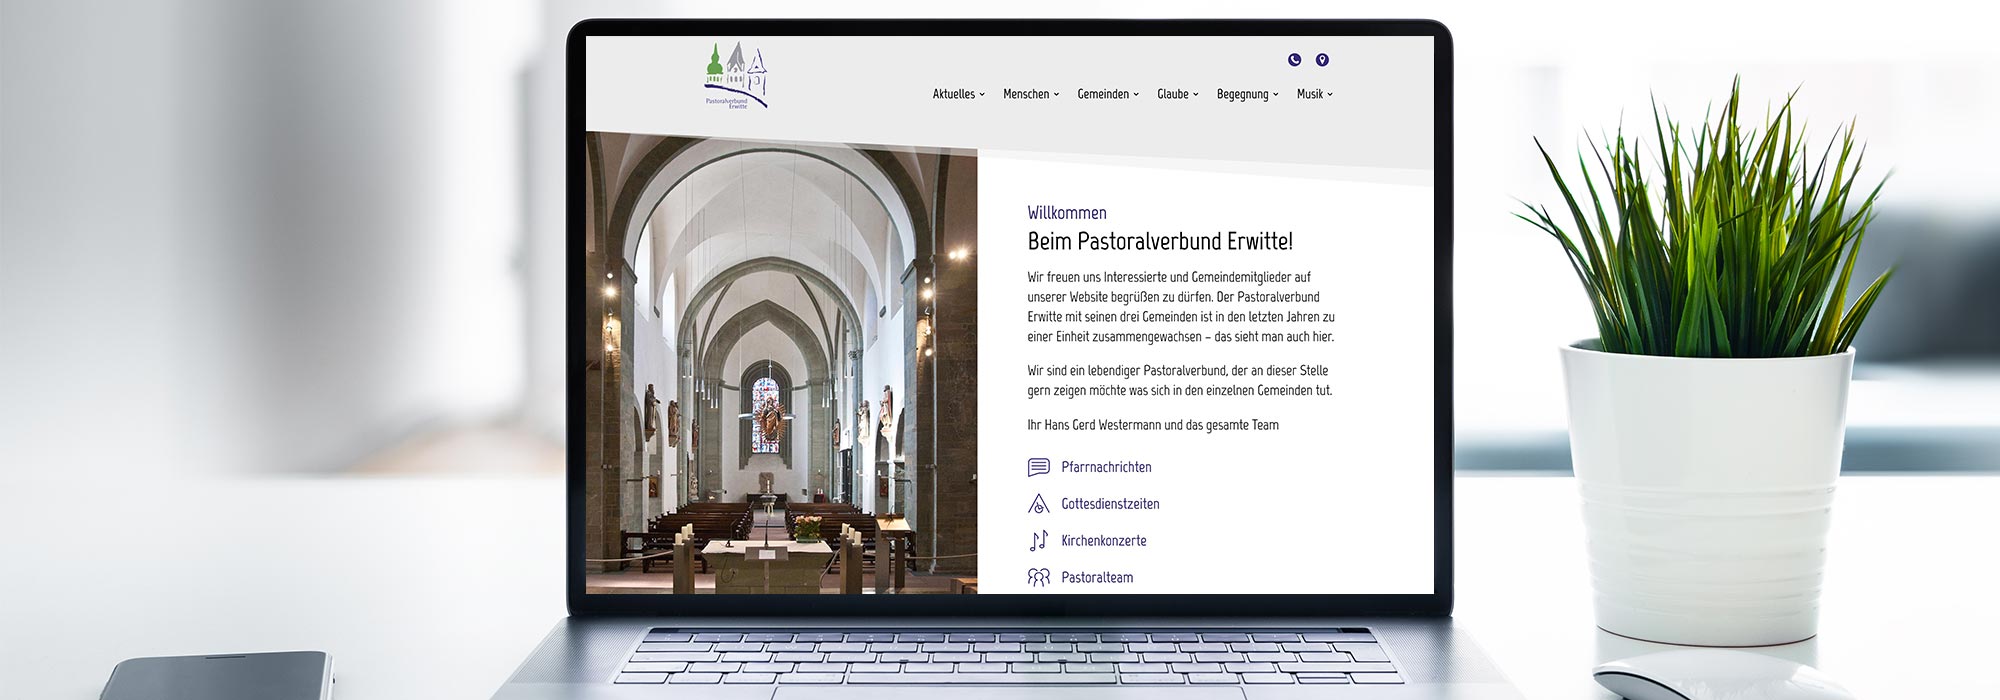 Pastoralverbund Erwitte Website